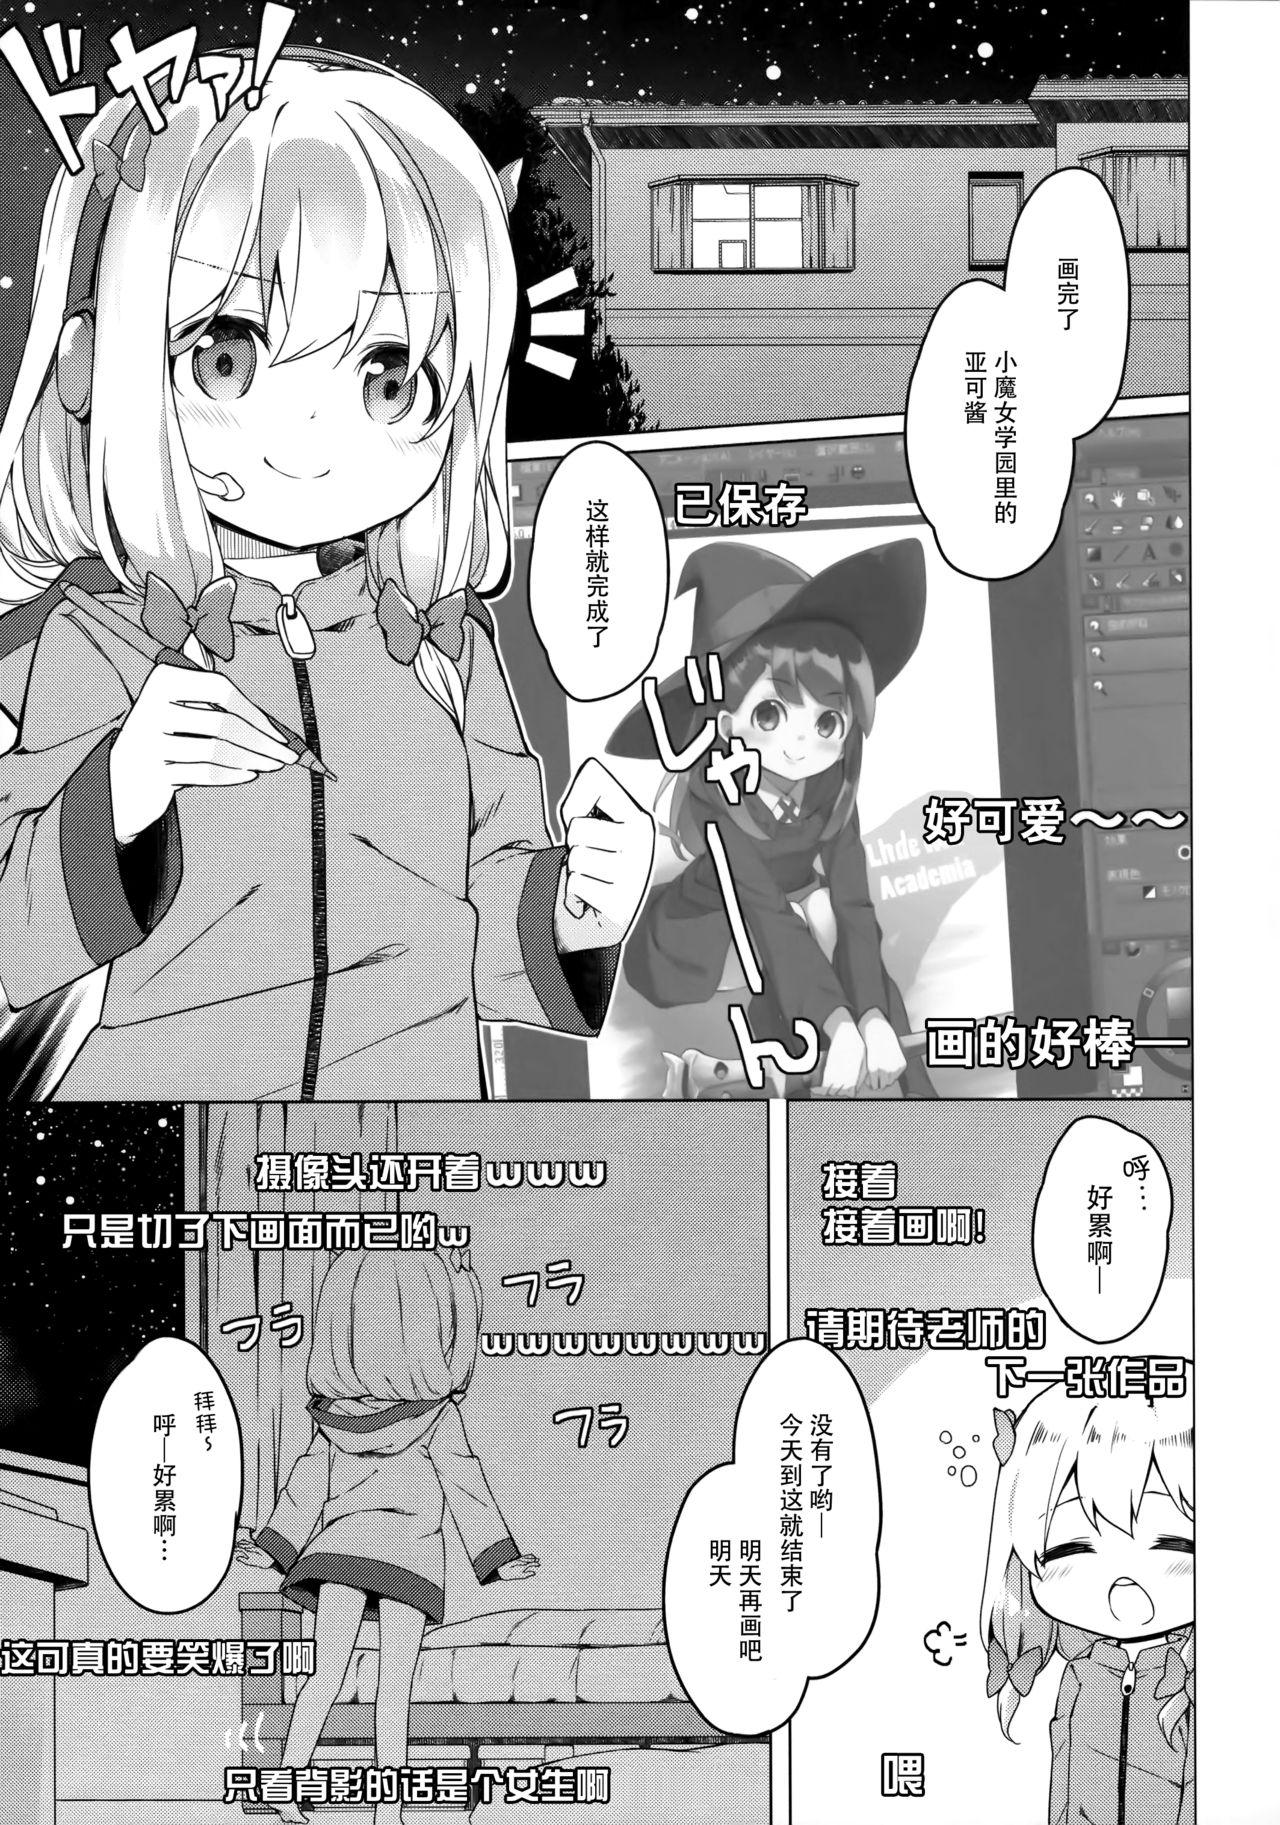 Selfie Yatta ne Sagiri-chan Shiryou ga Fueru ne! - Eromanga sensei Glamour - Page 5